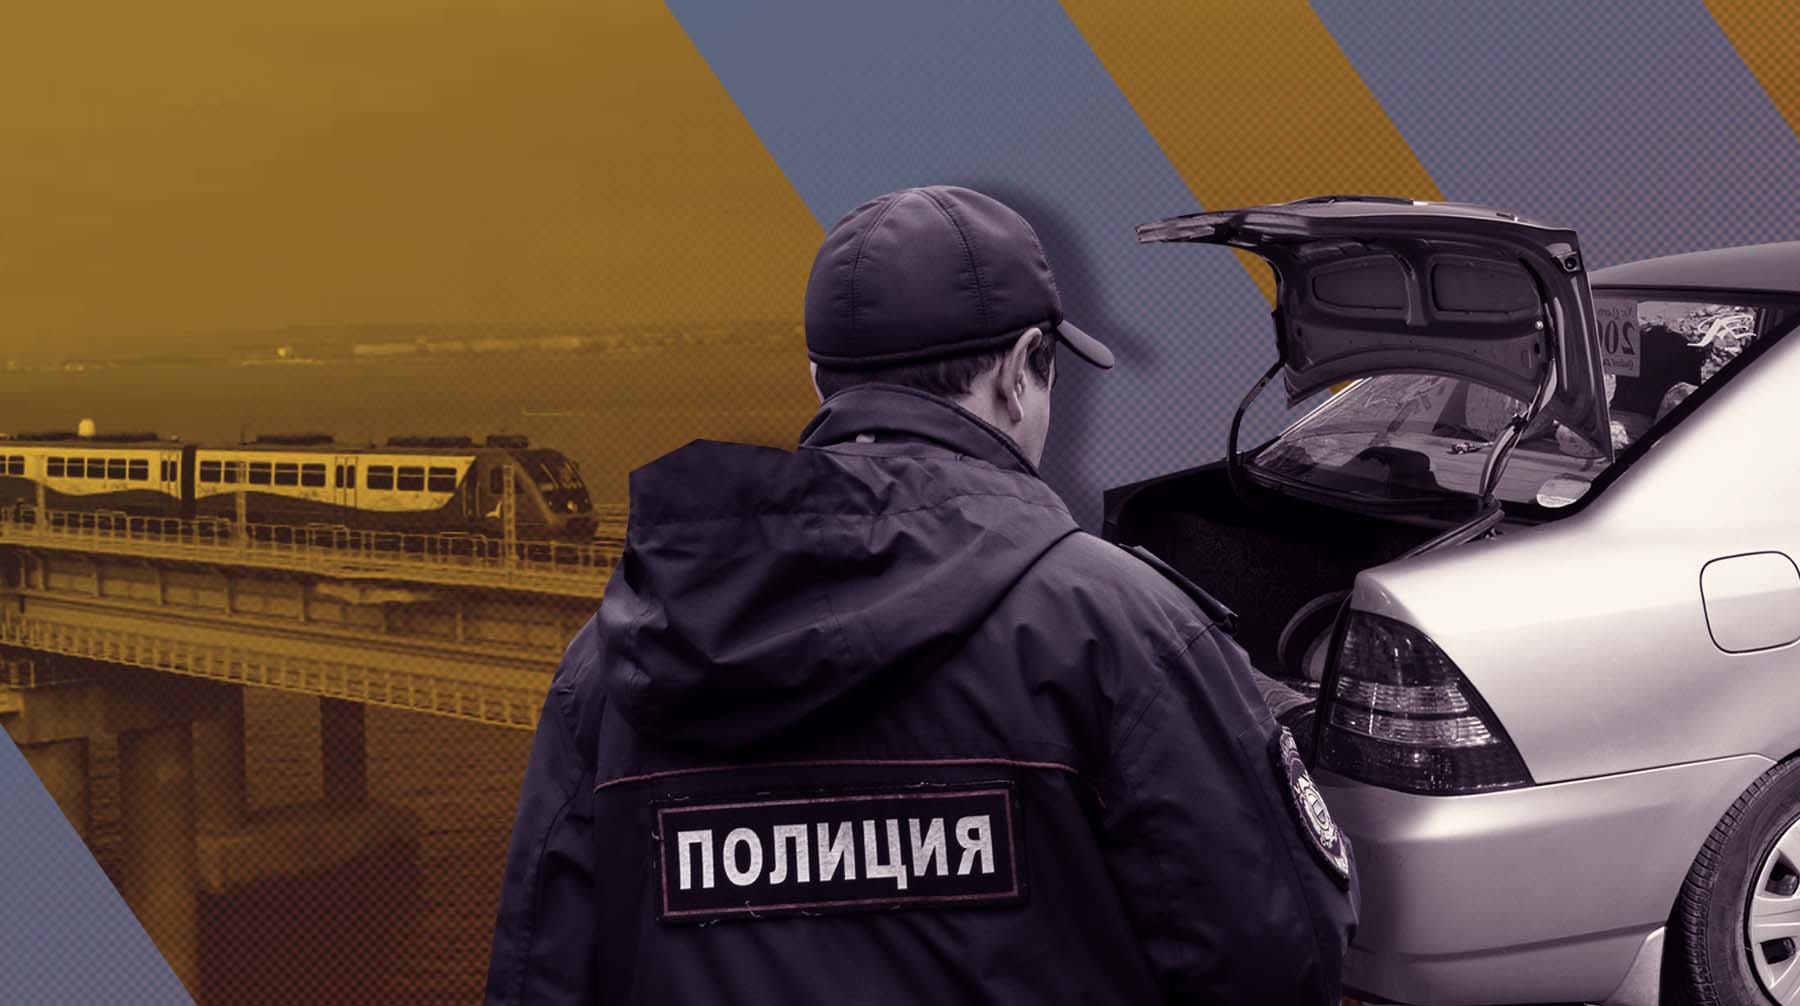 Dailystorm - Депутат Госдумы предложил ввести на Крымском мосту досмотровые пункты для грузовиков как на пограничном контроле